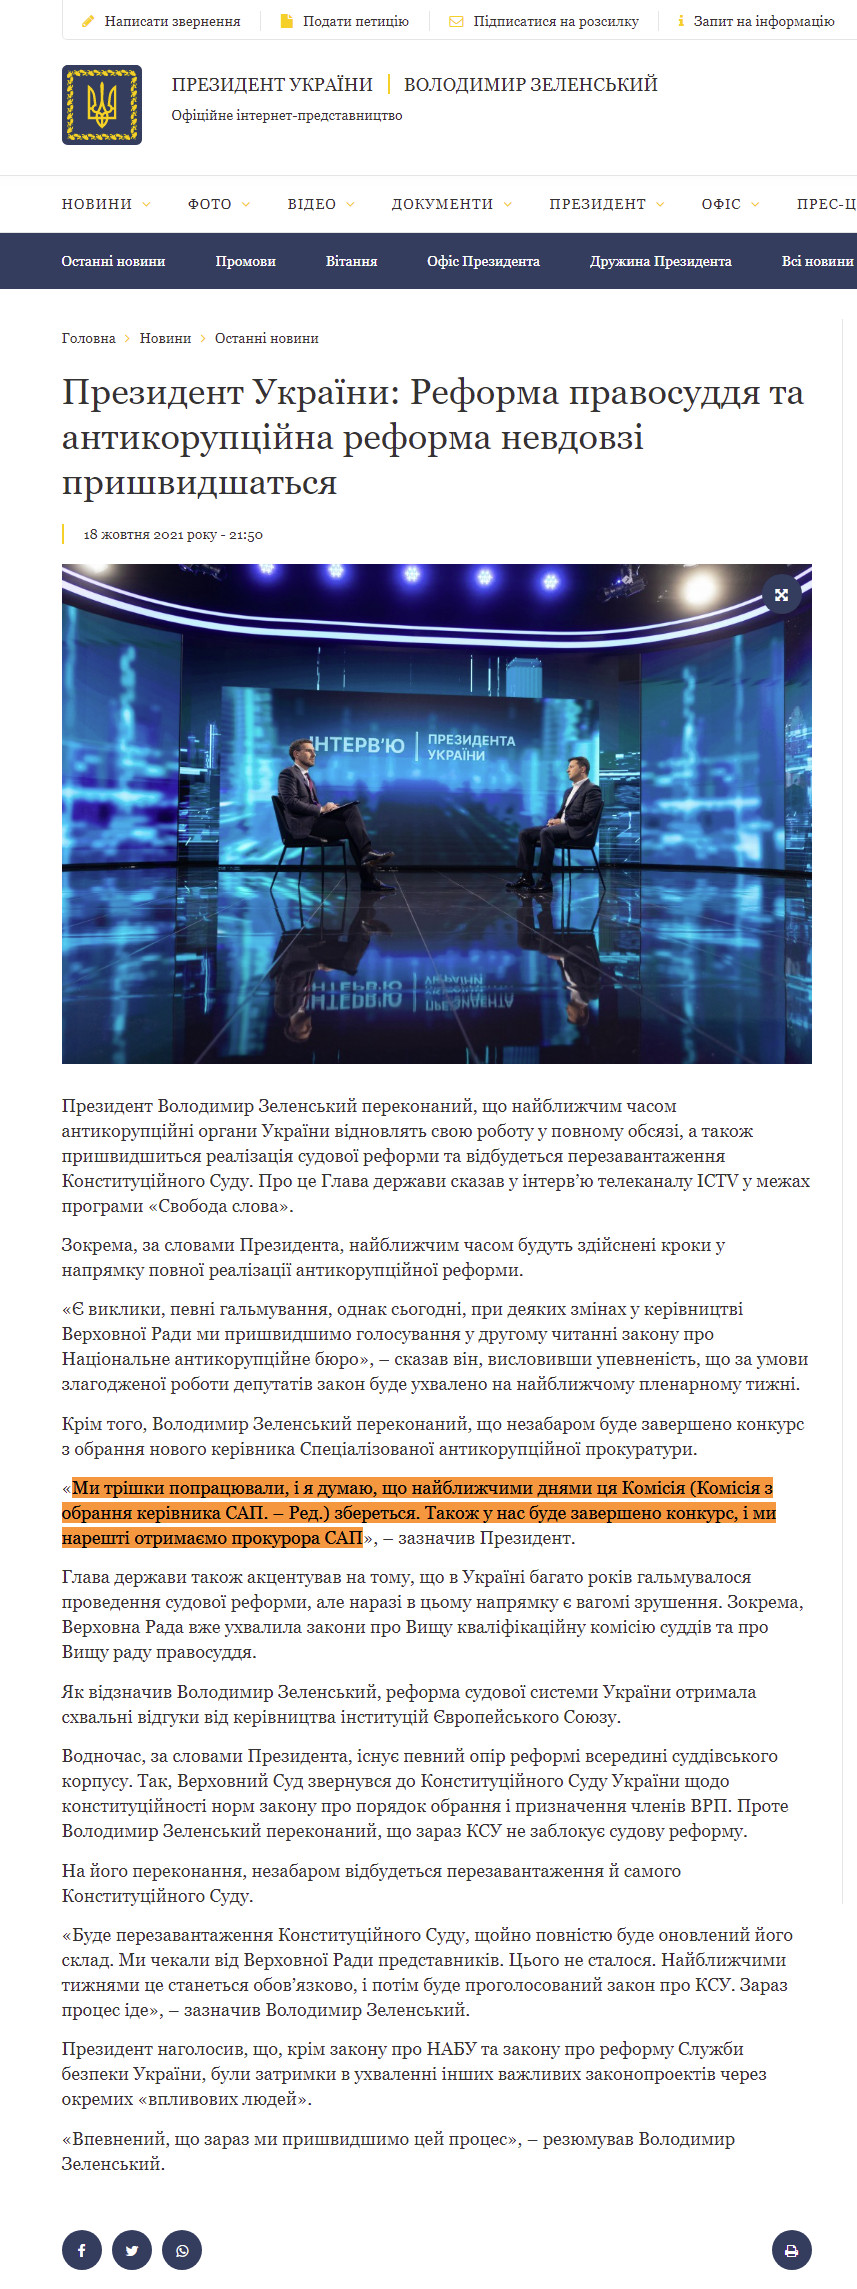 https://www.president.gov.ua/news/prezident-ukrayini-reforma-pravosuddya-ta-antikorupcijna-ref-71133